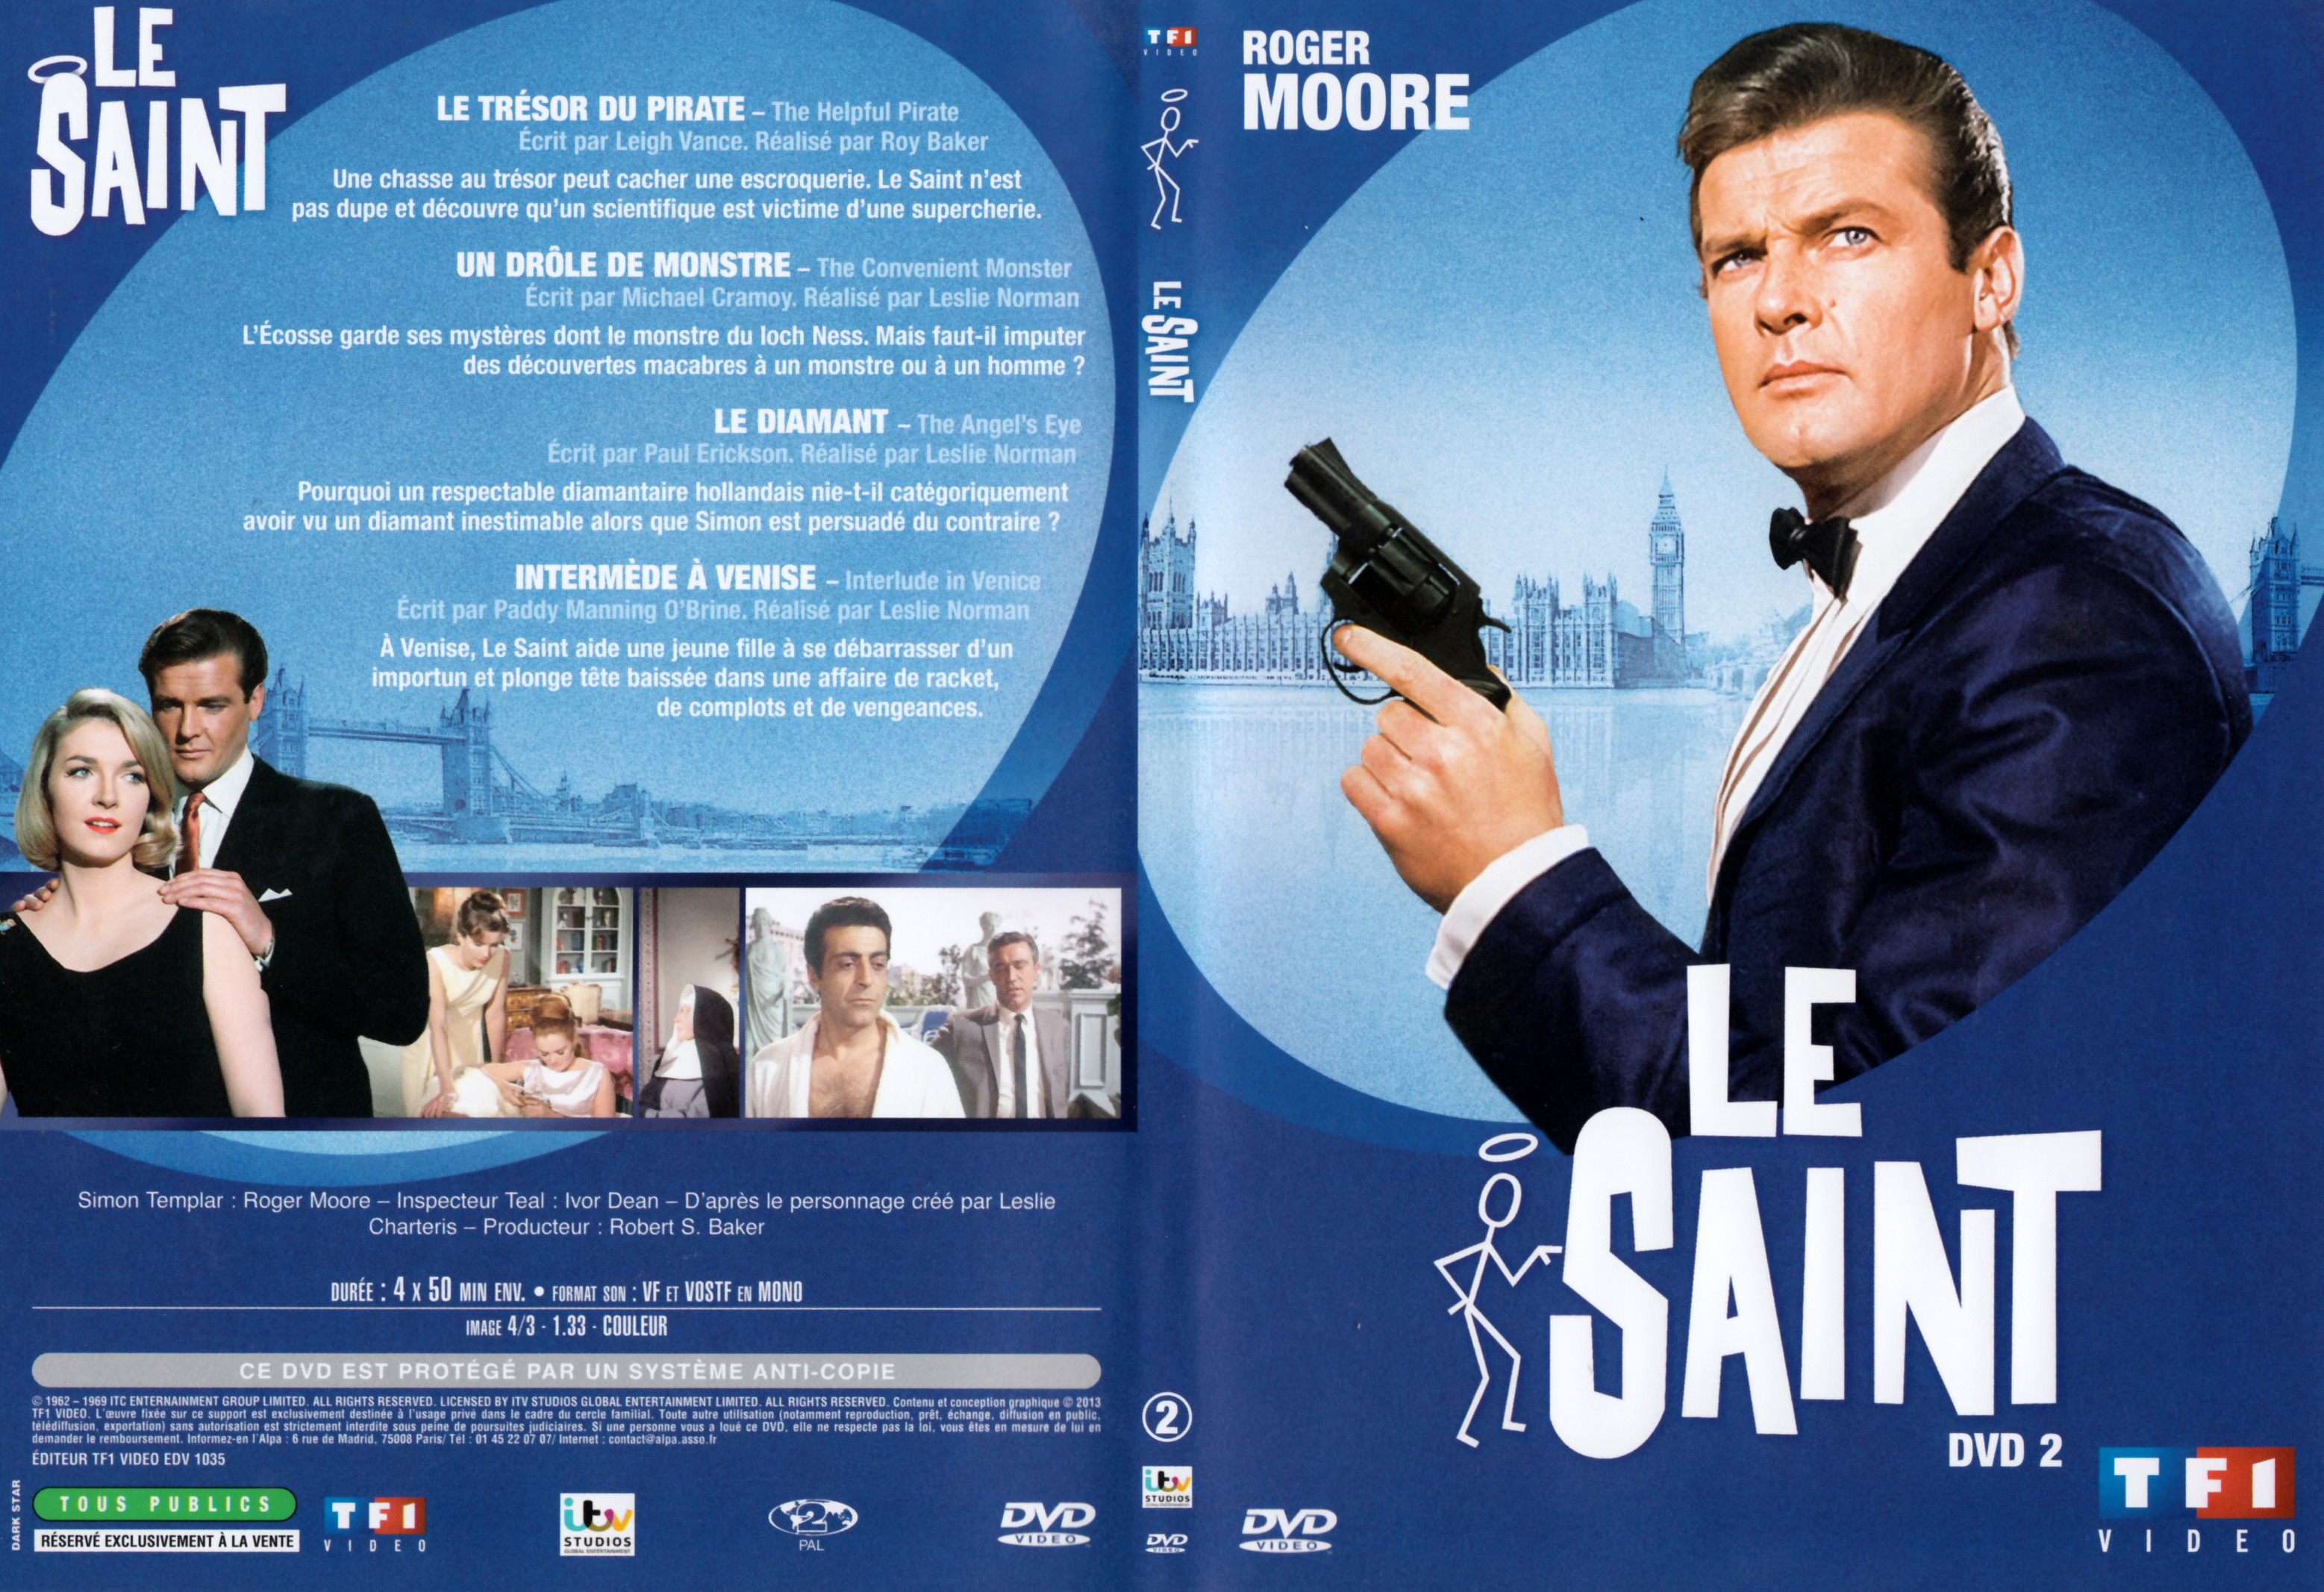 Jaquette DVD Le saint Saison 4 DVD 2